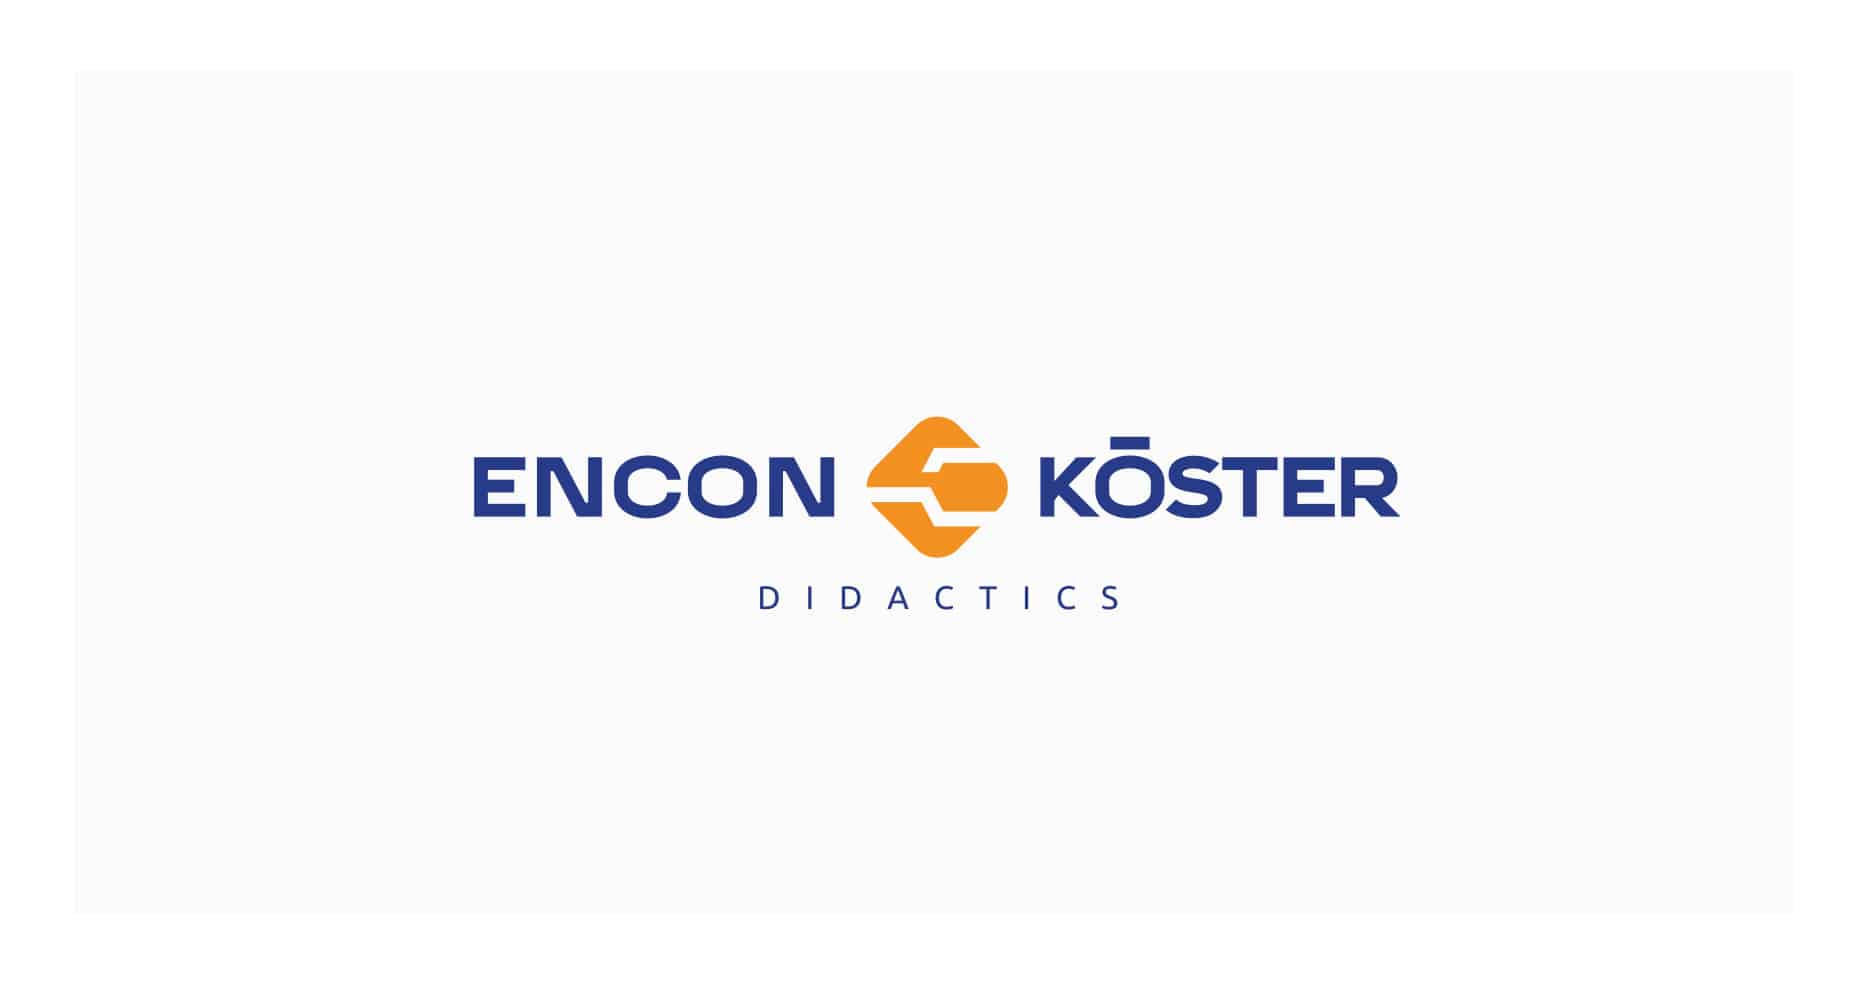 Encon didactics logo